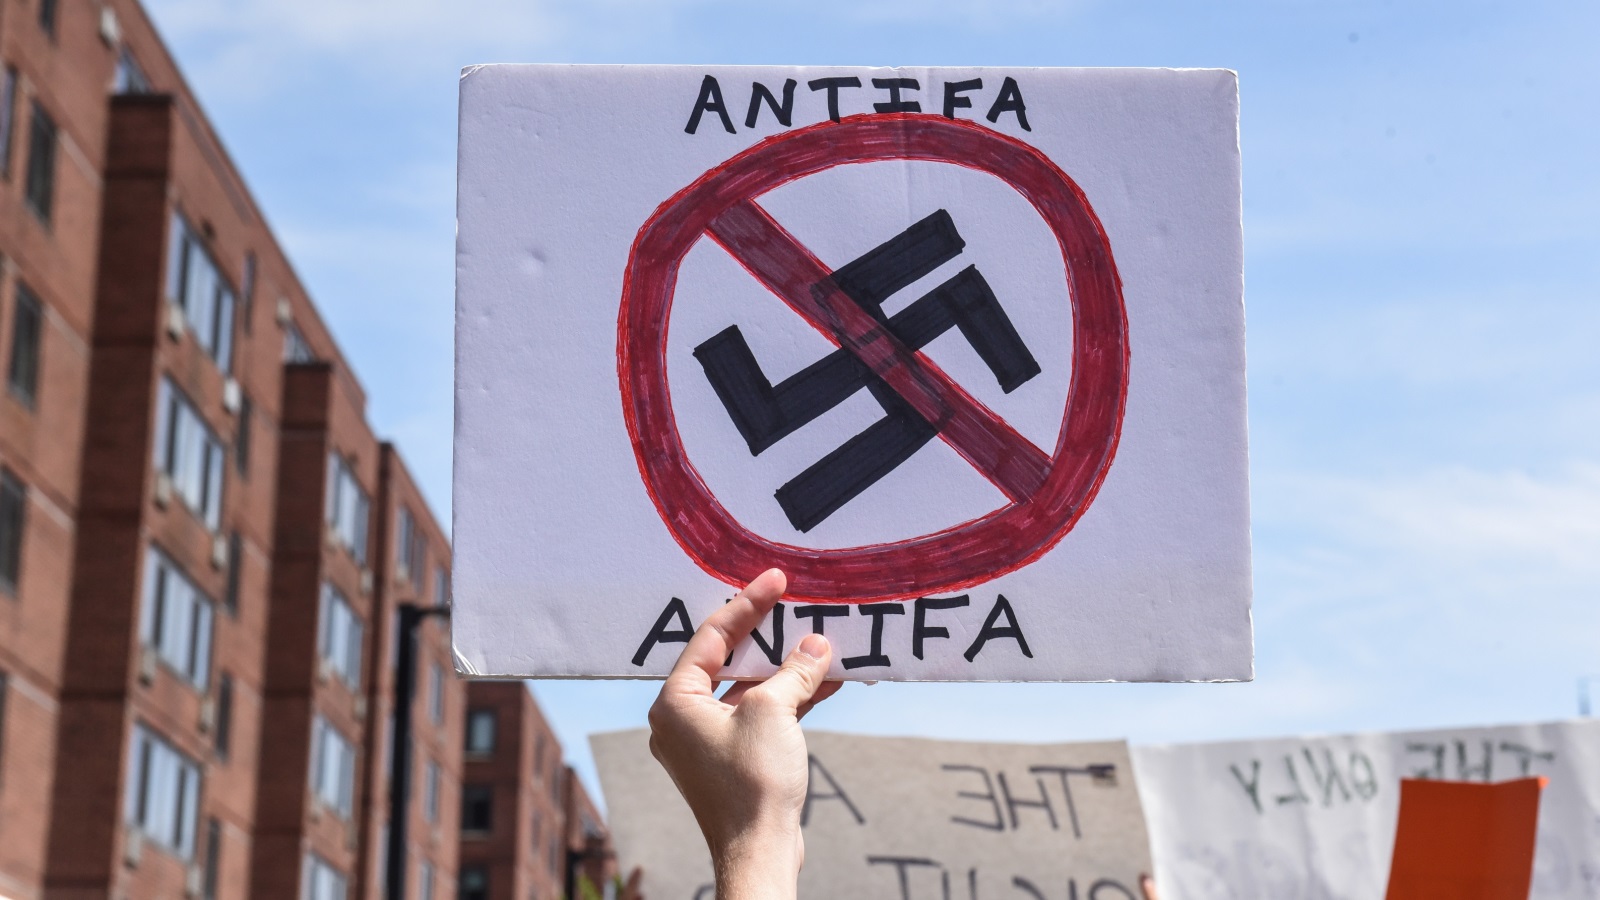 ‪المتظاهرون رفعوا لافتات ترفض العنصرية والنازية‬ (رويترز)